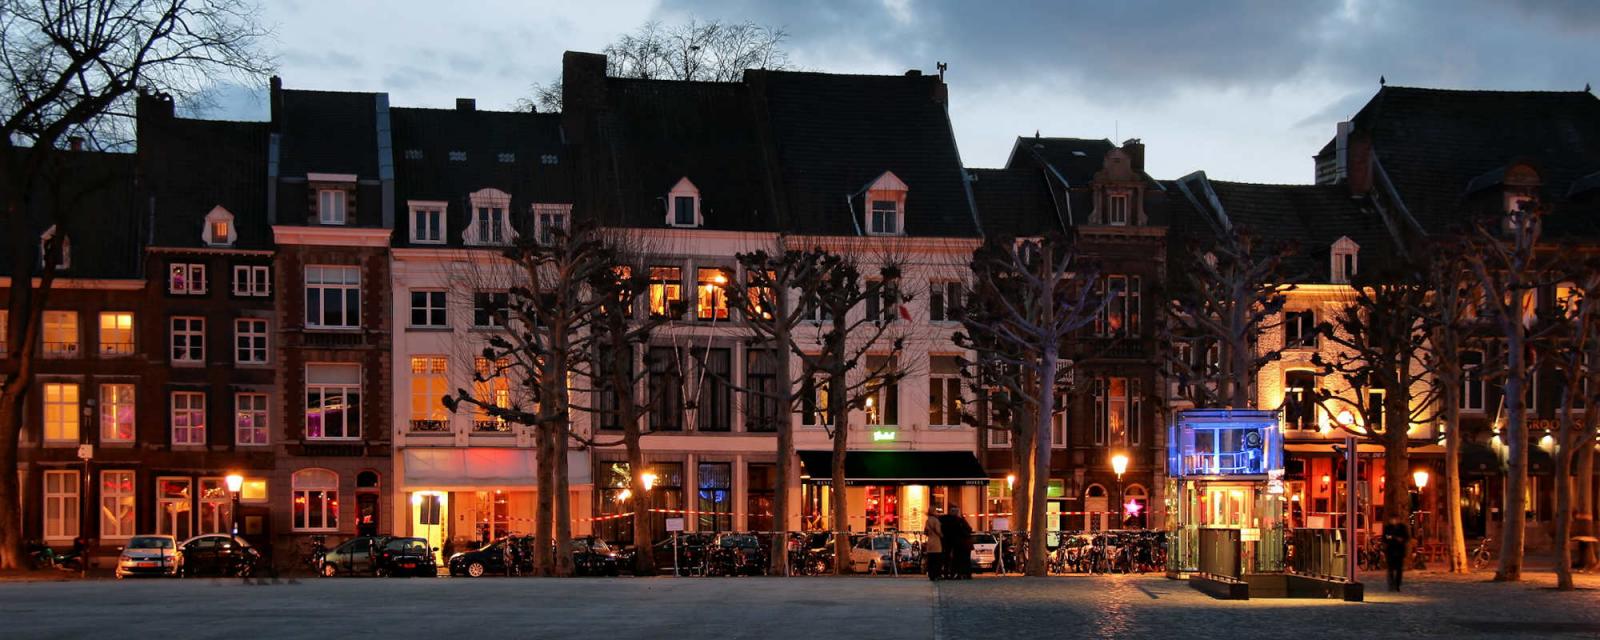 Tips voor een dagtrip naar Maastricht | CityZapper 